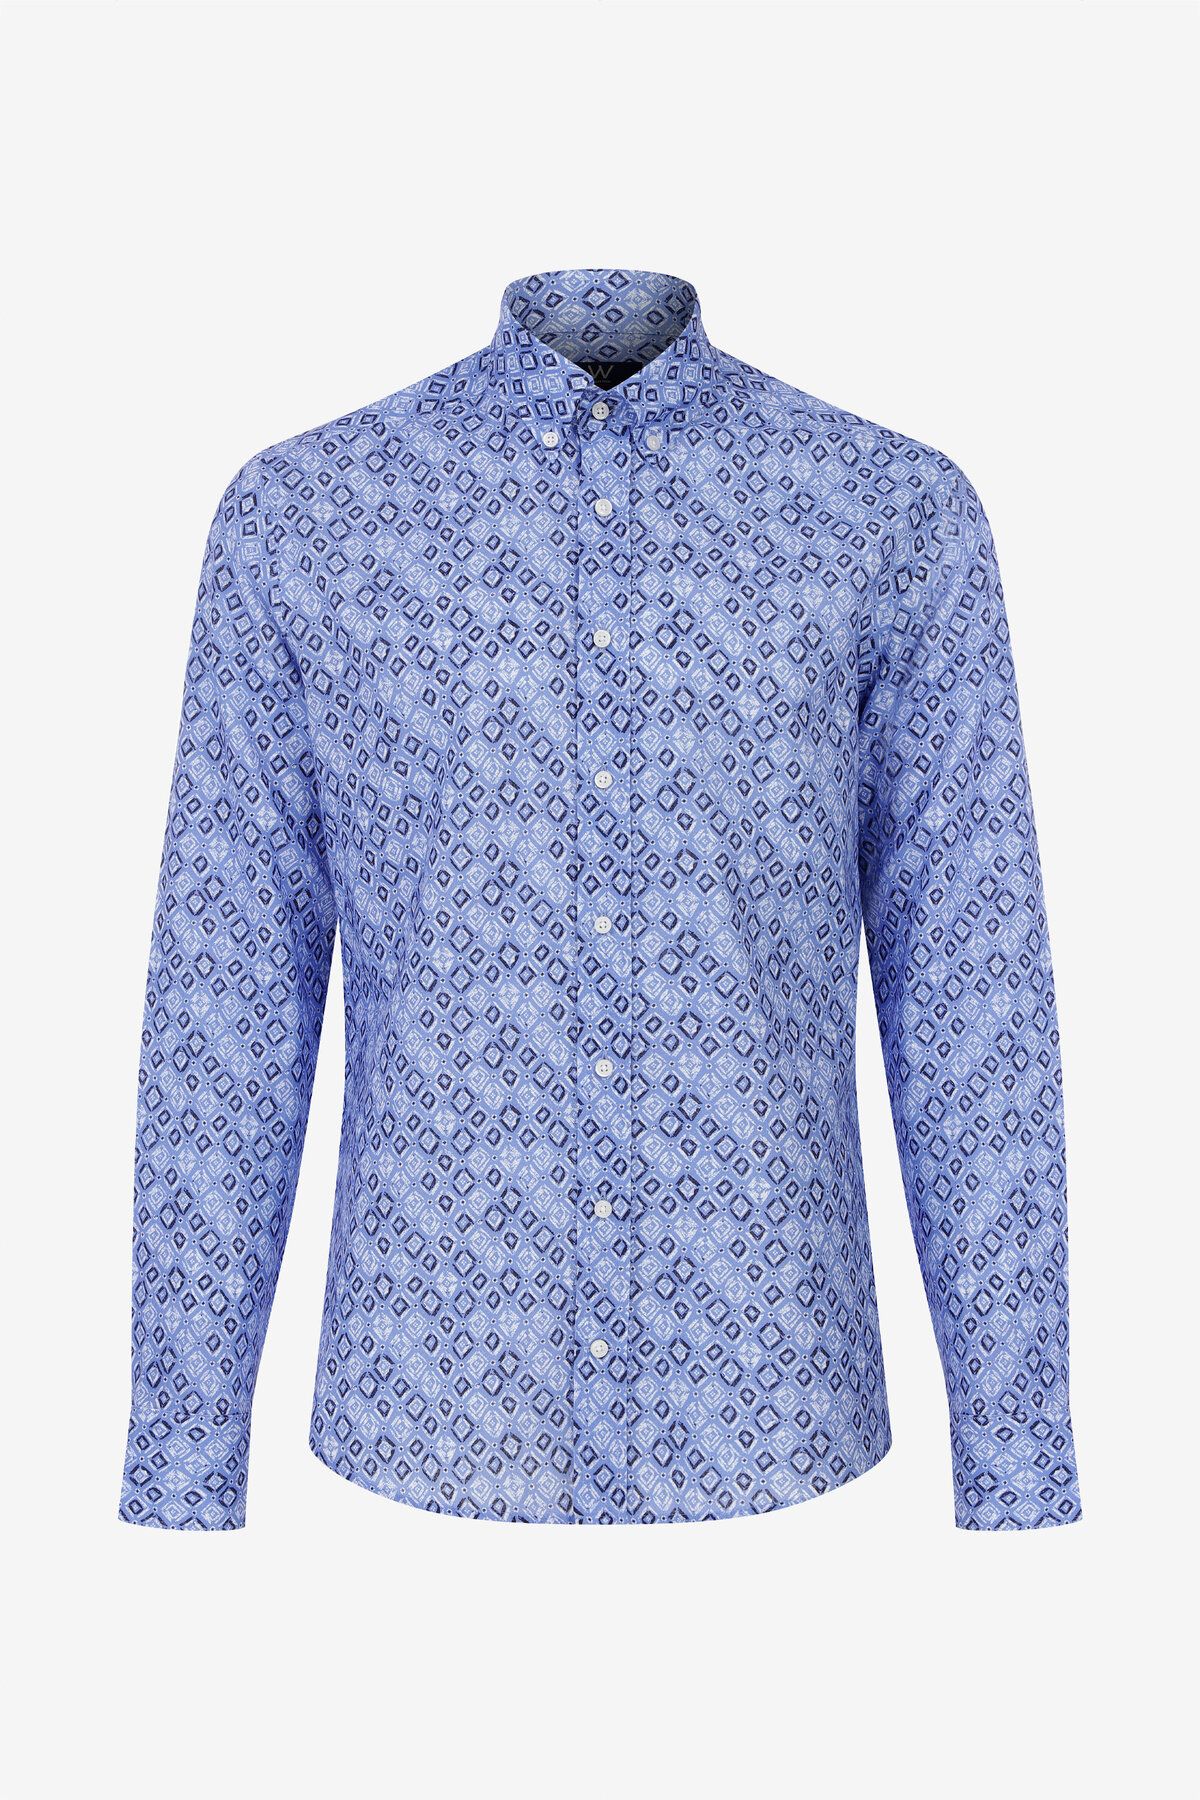 W Collection Mavi-beyaz Prınt Gömlek